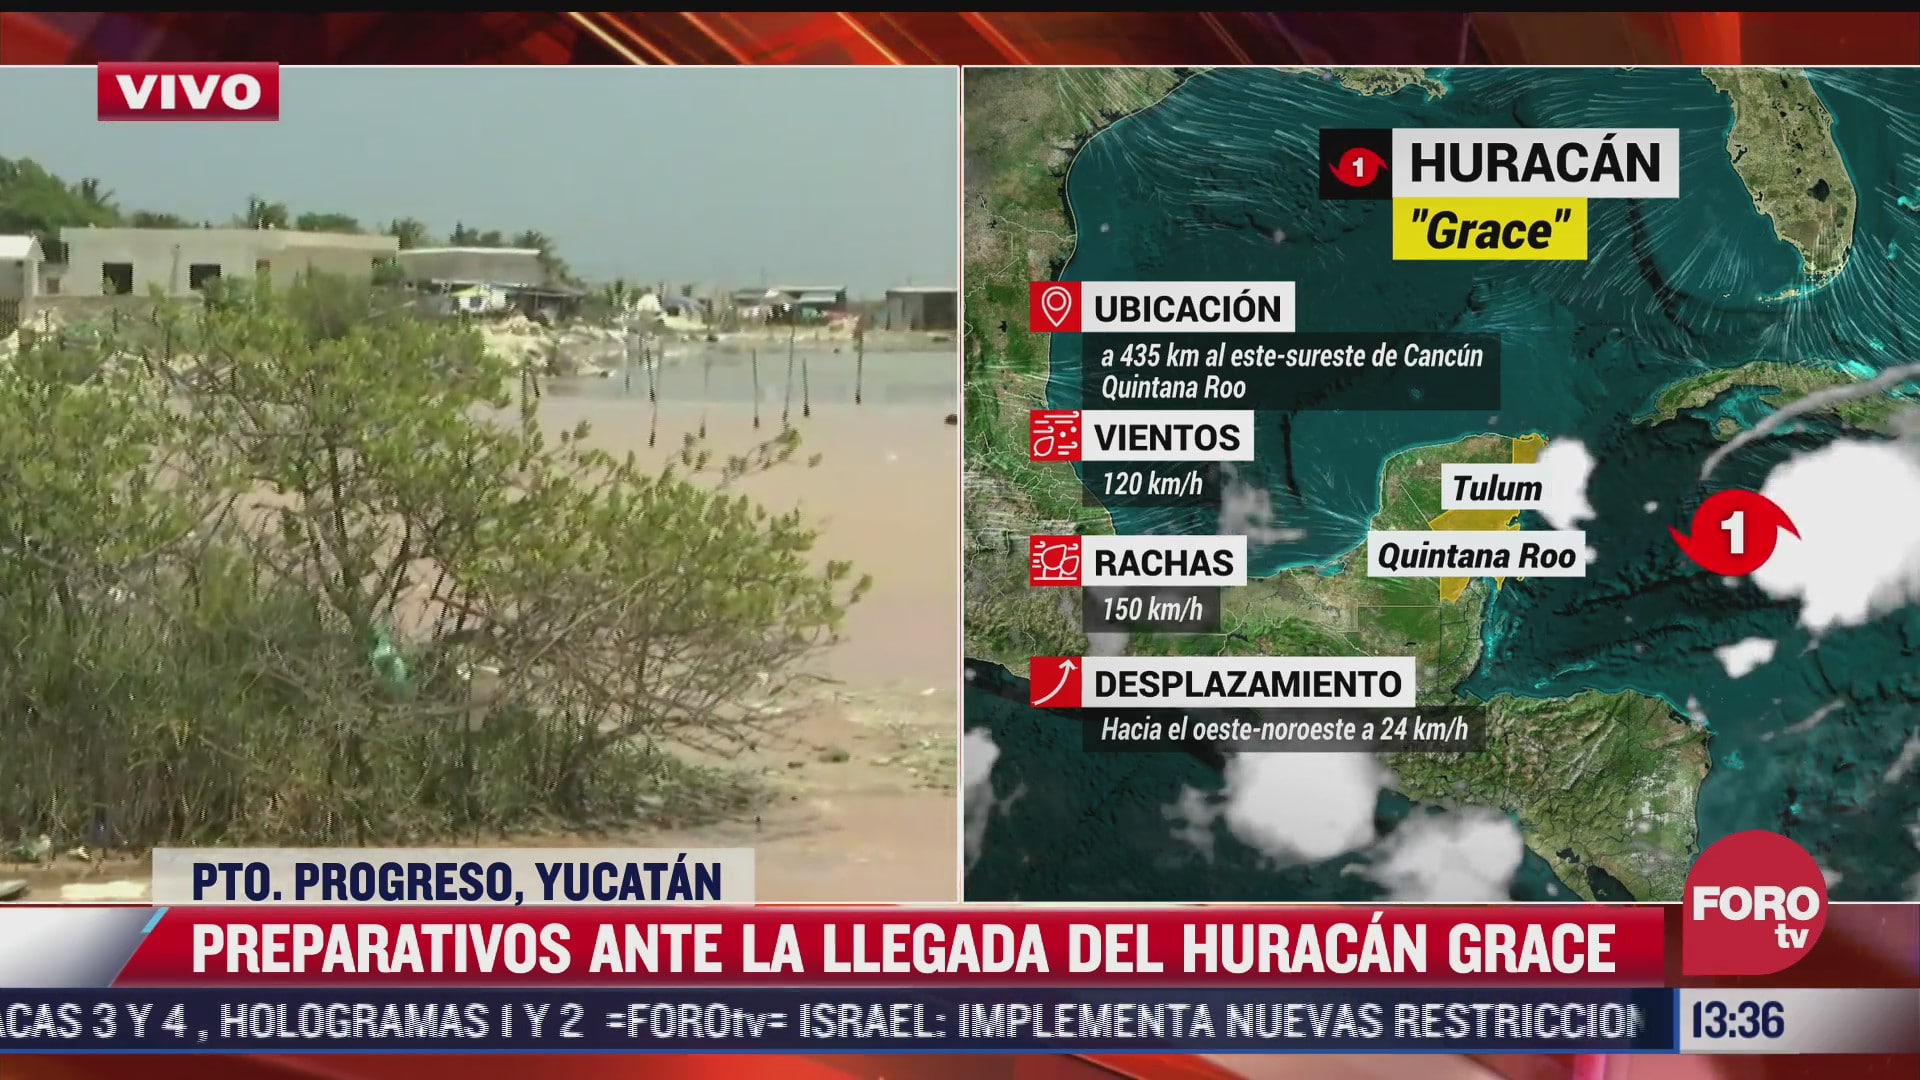 yucatan activa protocolos de seguridad ante llegada del huracan grace